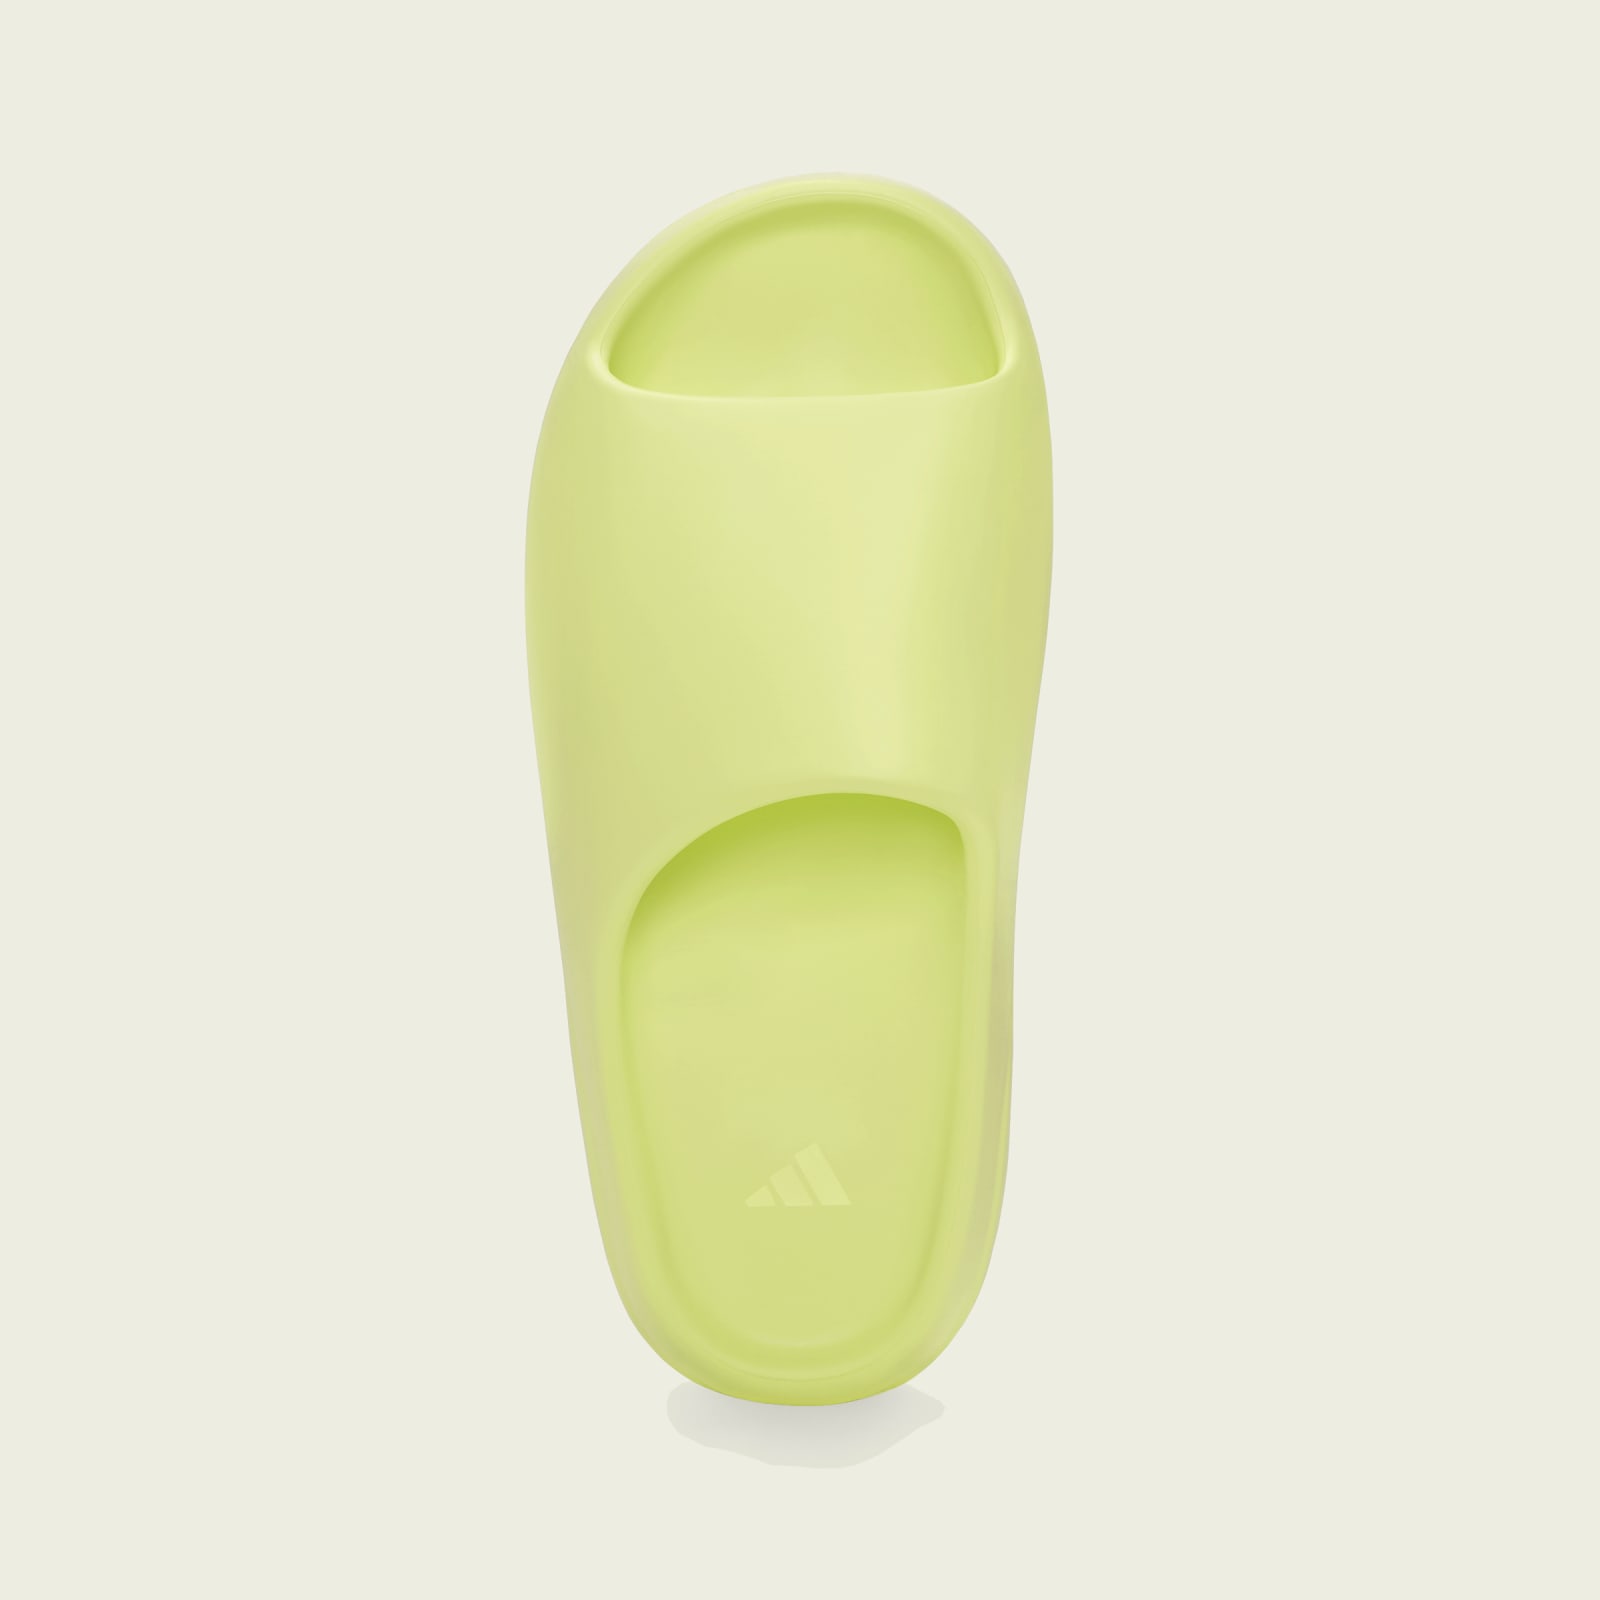 Adidas Yeezy Slide
« Glow Green »